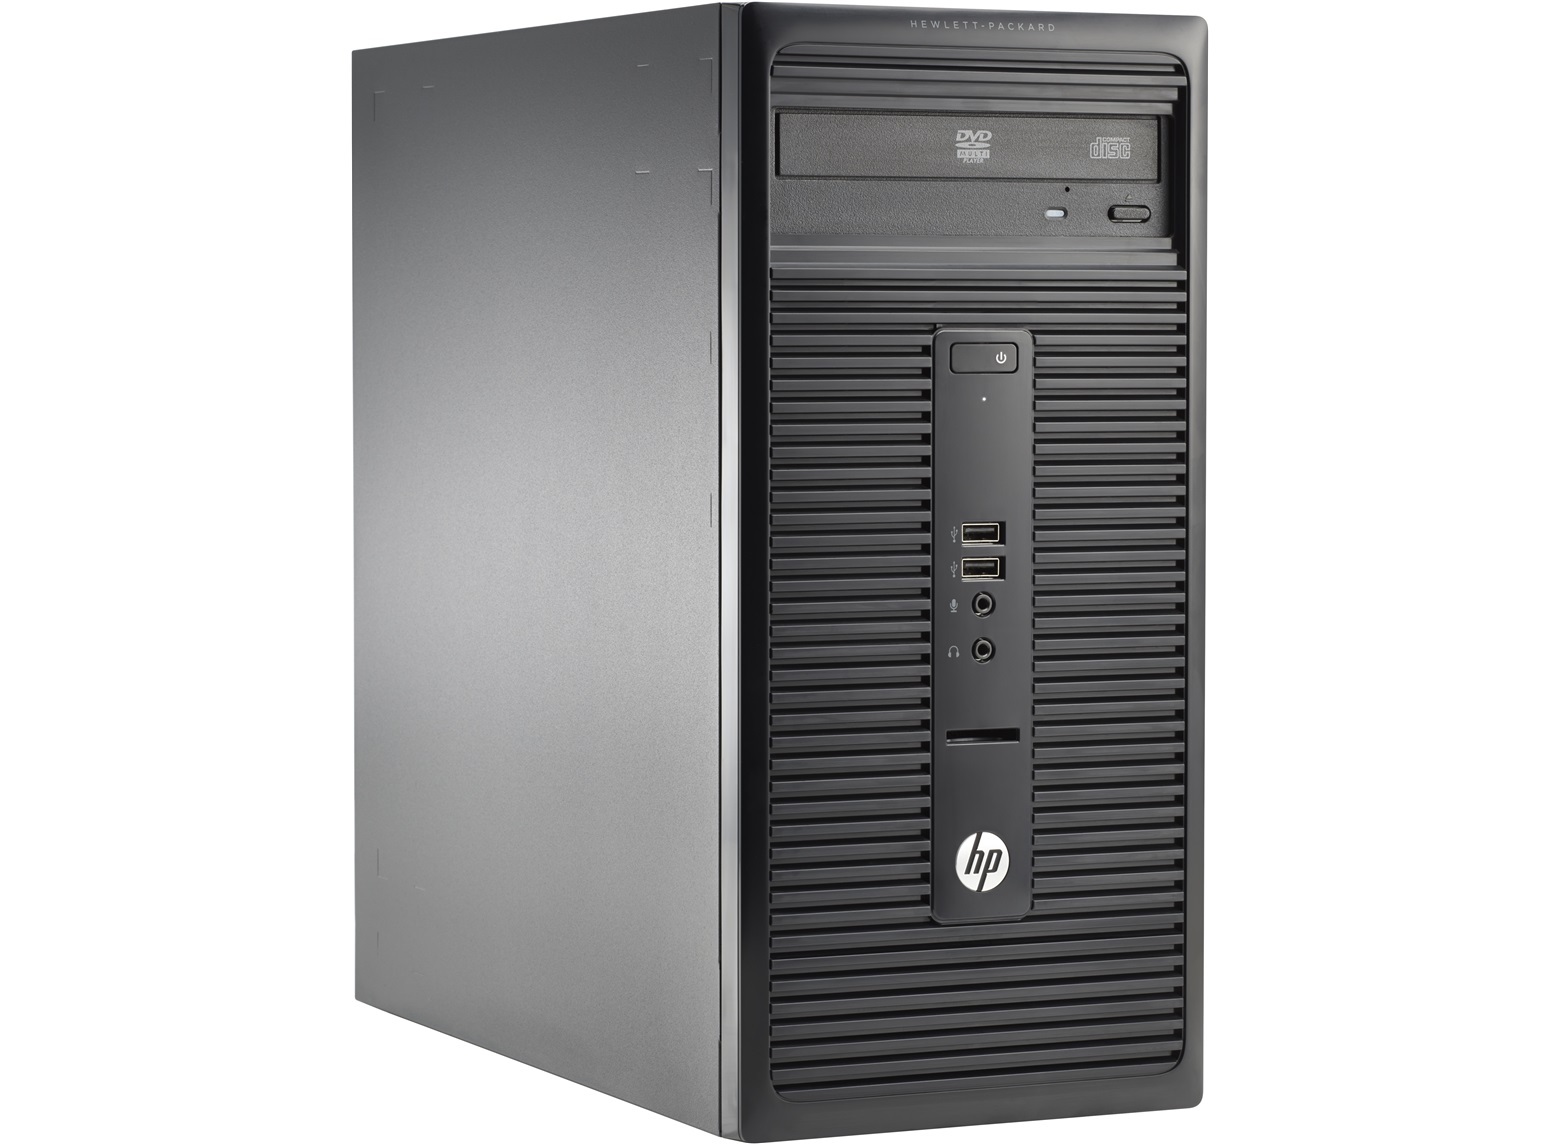 Máy tính để bàn HP 280 M7G79PT - Intel core i3, 4GB RAM, HDD 500GB, Intel HD Graphics 4400